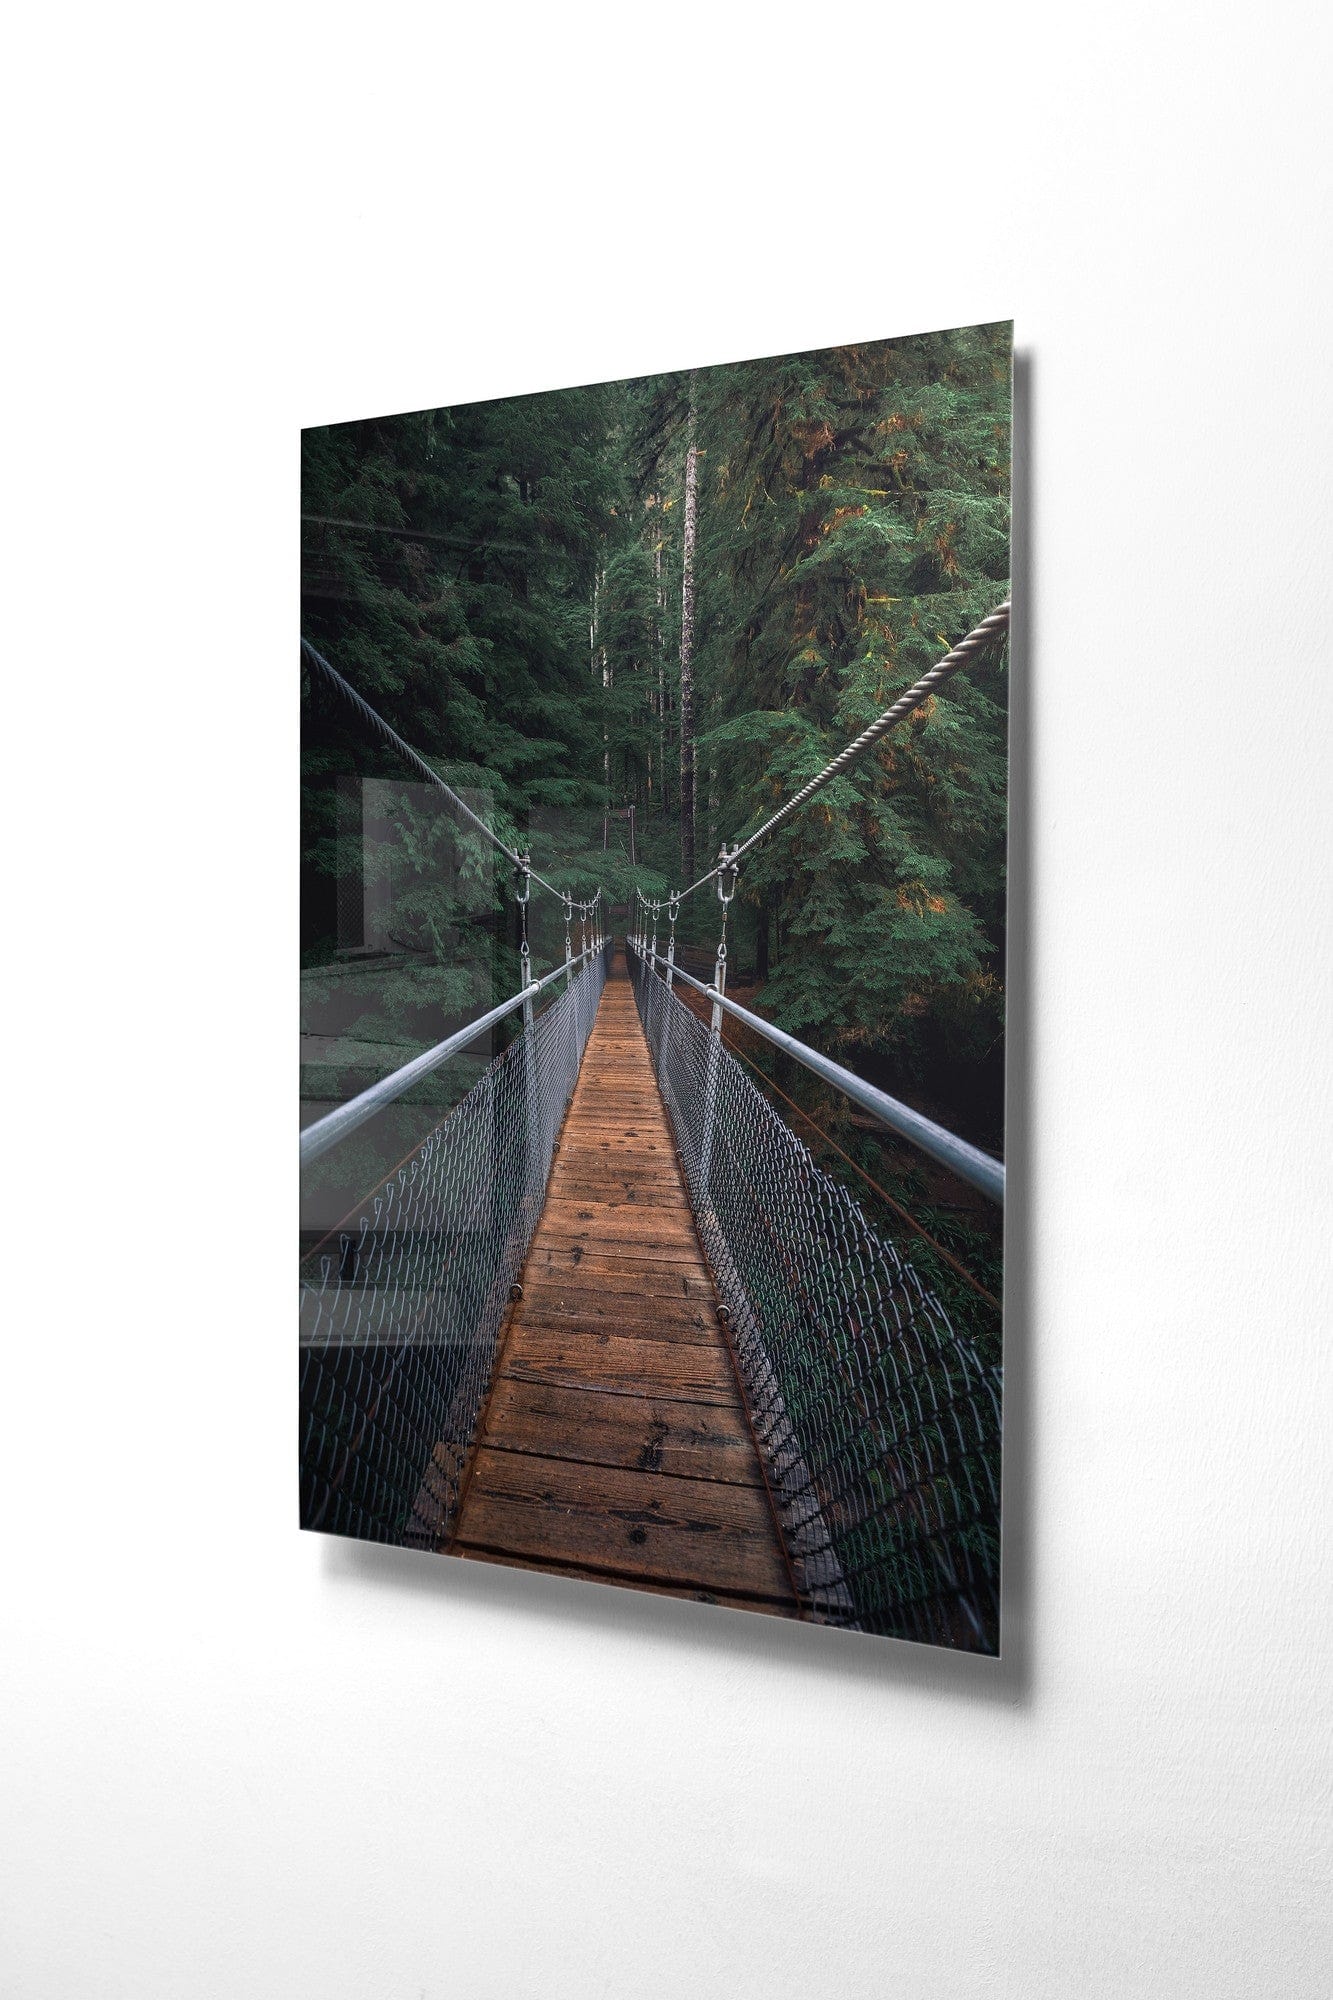 Asir Tablou Sticla Bridge 1157 Multicolor, 30 x 45 cm